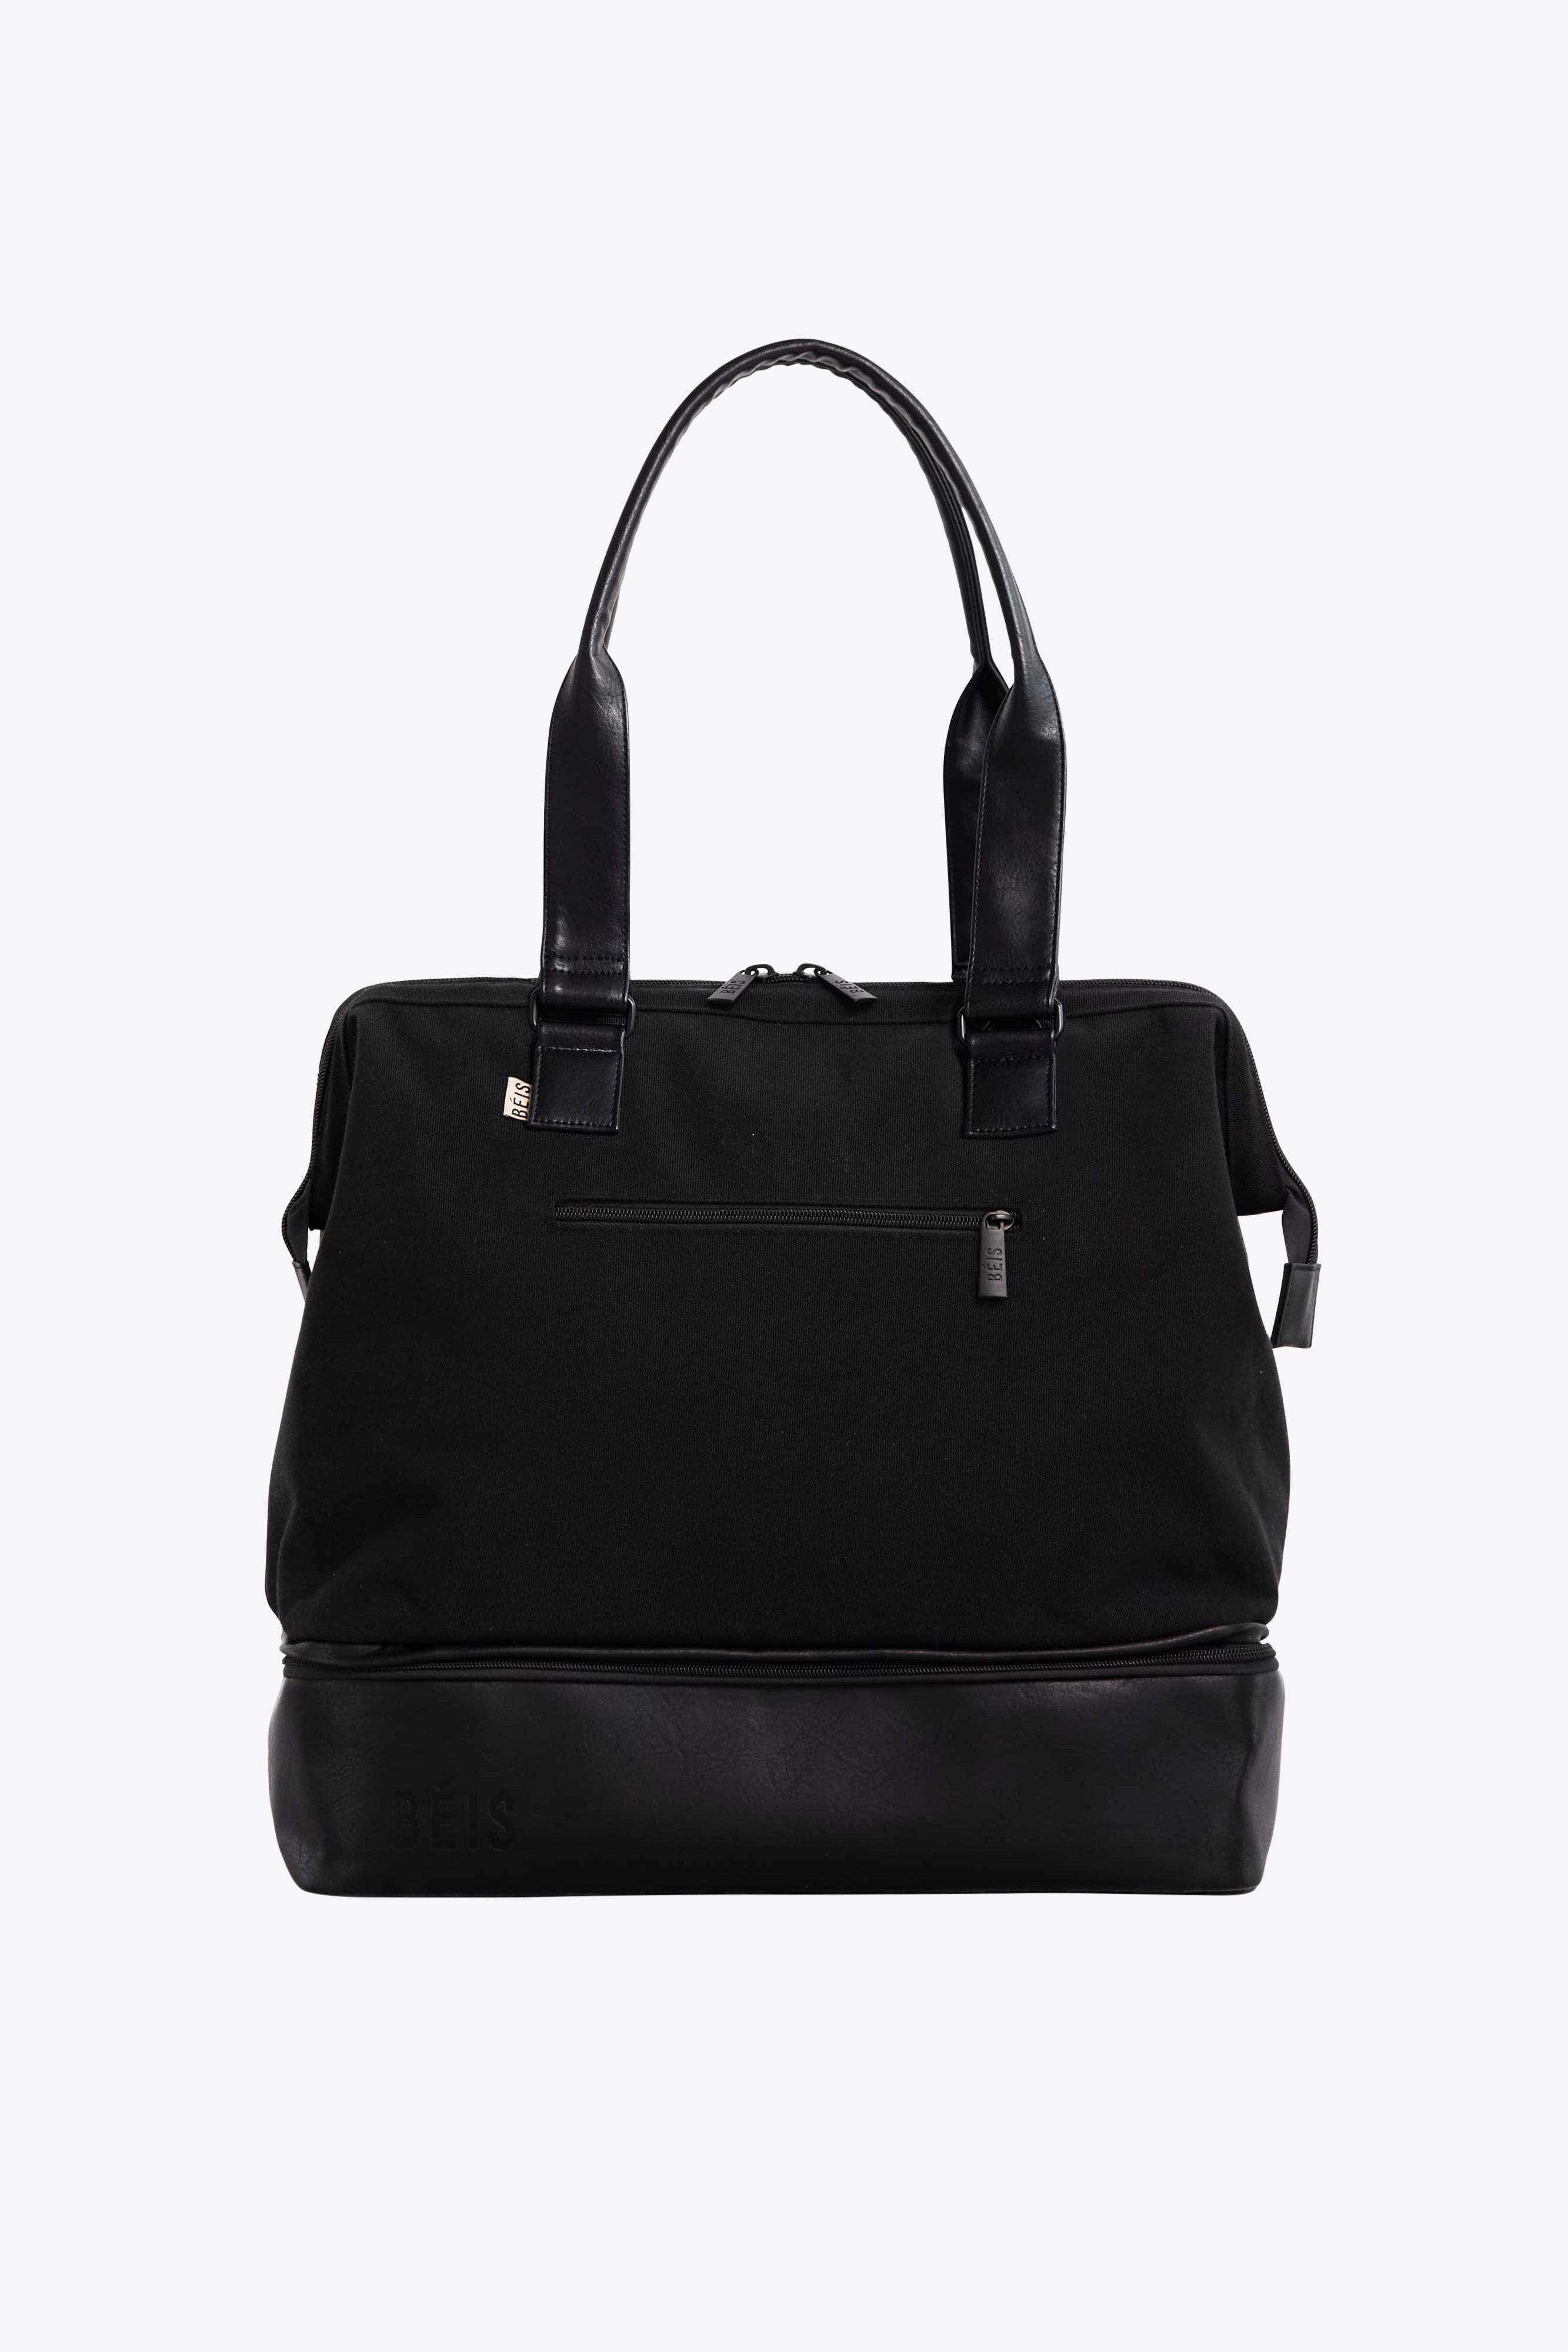 BÉIS 'The Convertible Mini Weekender' in Black - Small Weekend Bag ...